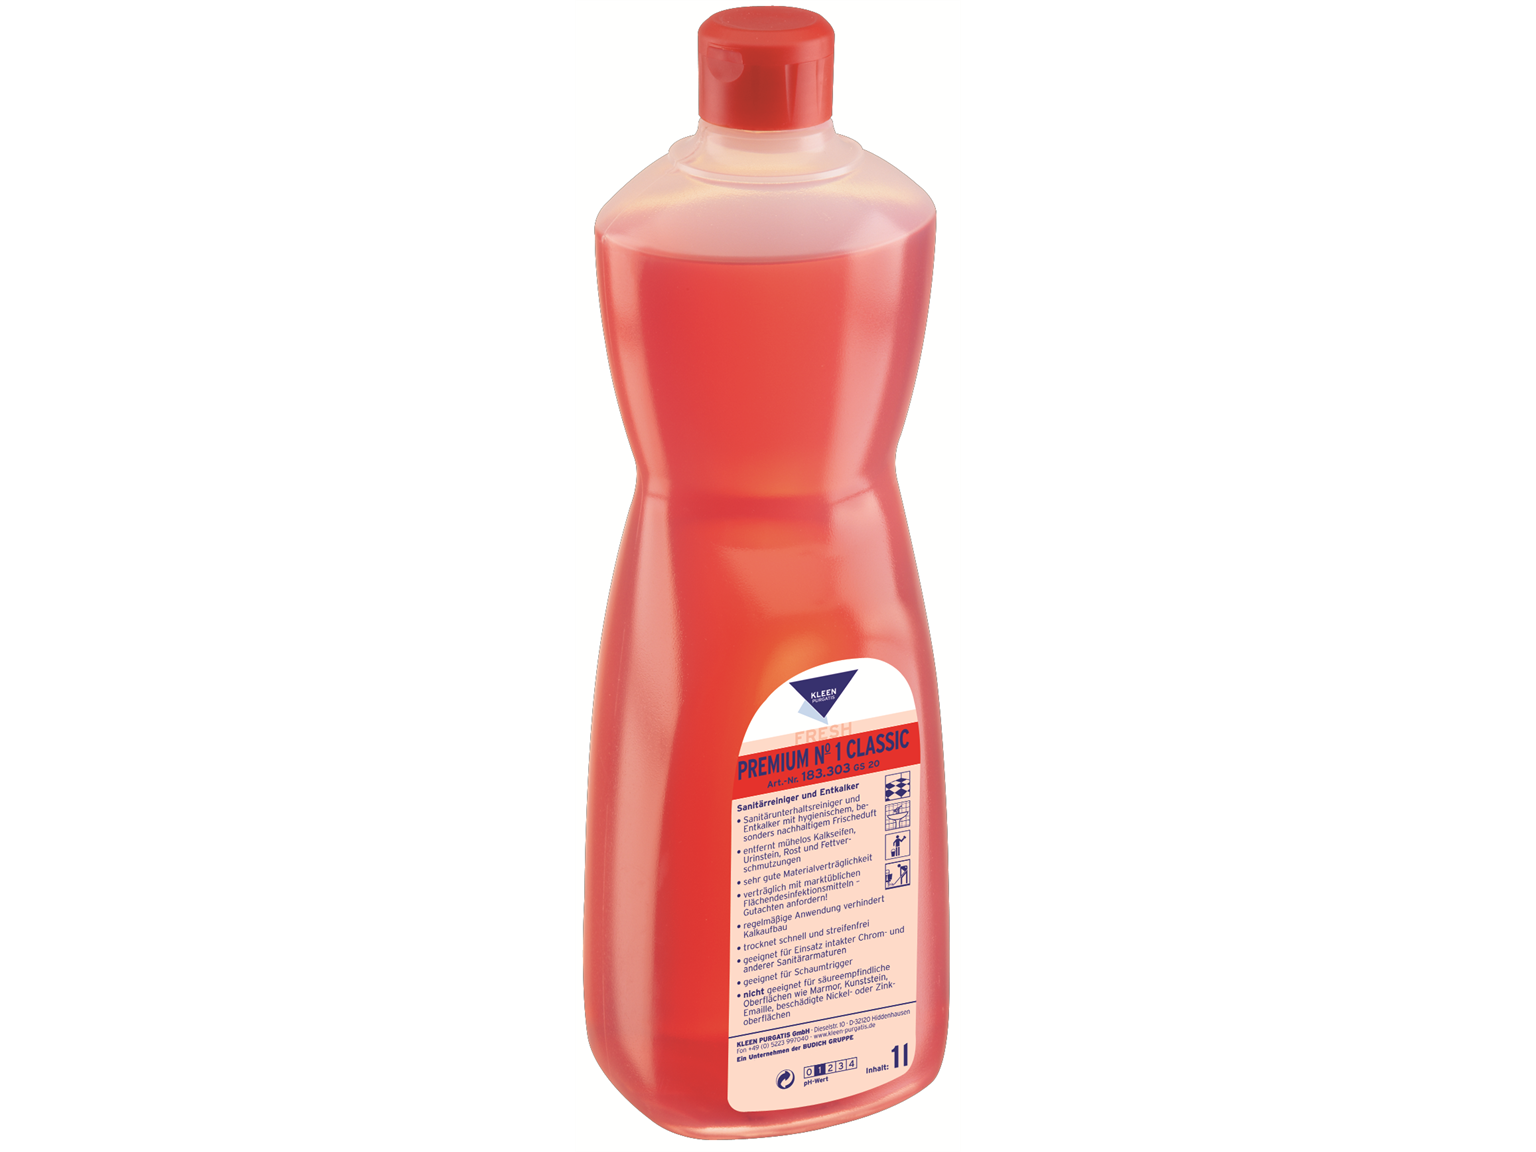 REINIGUNGSMITTEL KLEEN PURGATIS  Premium No. 1, 1 Liter Flasche